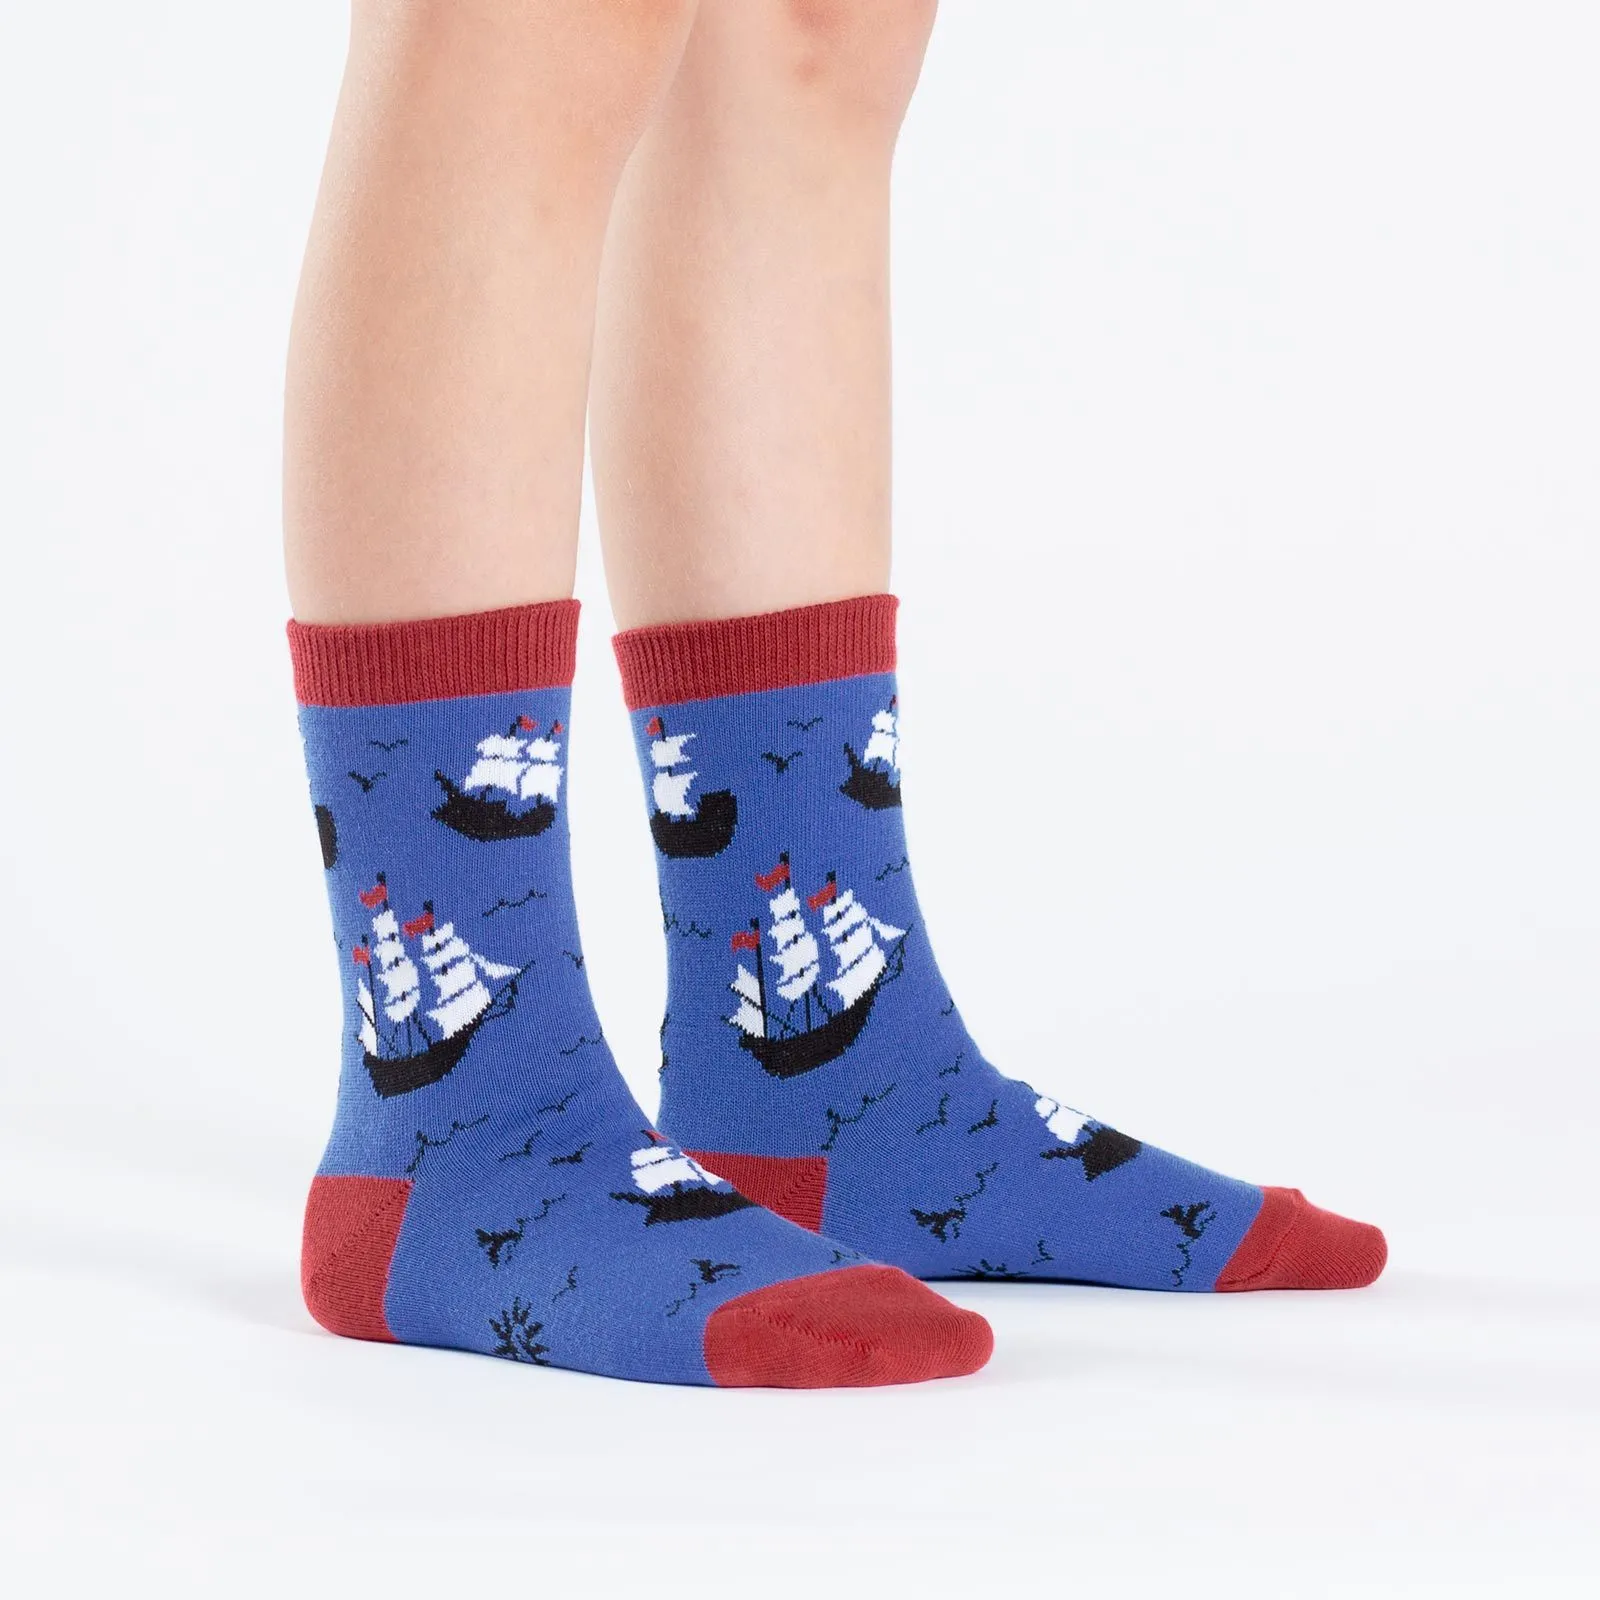 Premium OEM Printed Socks manufacturing service